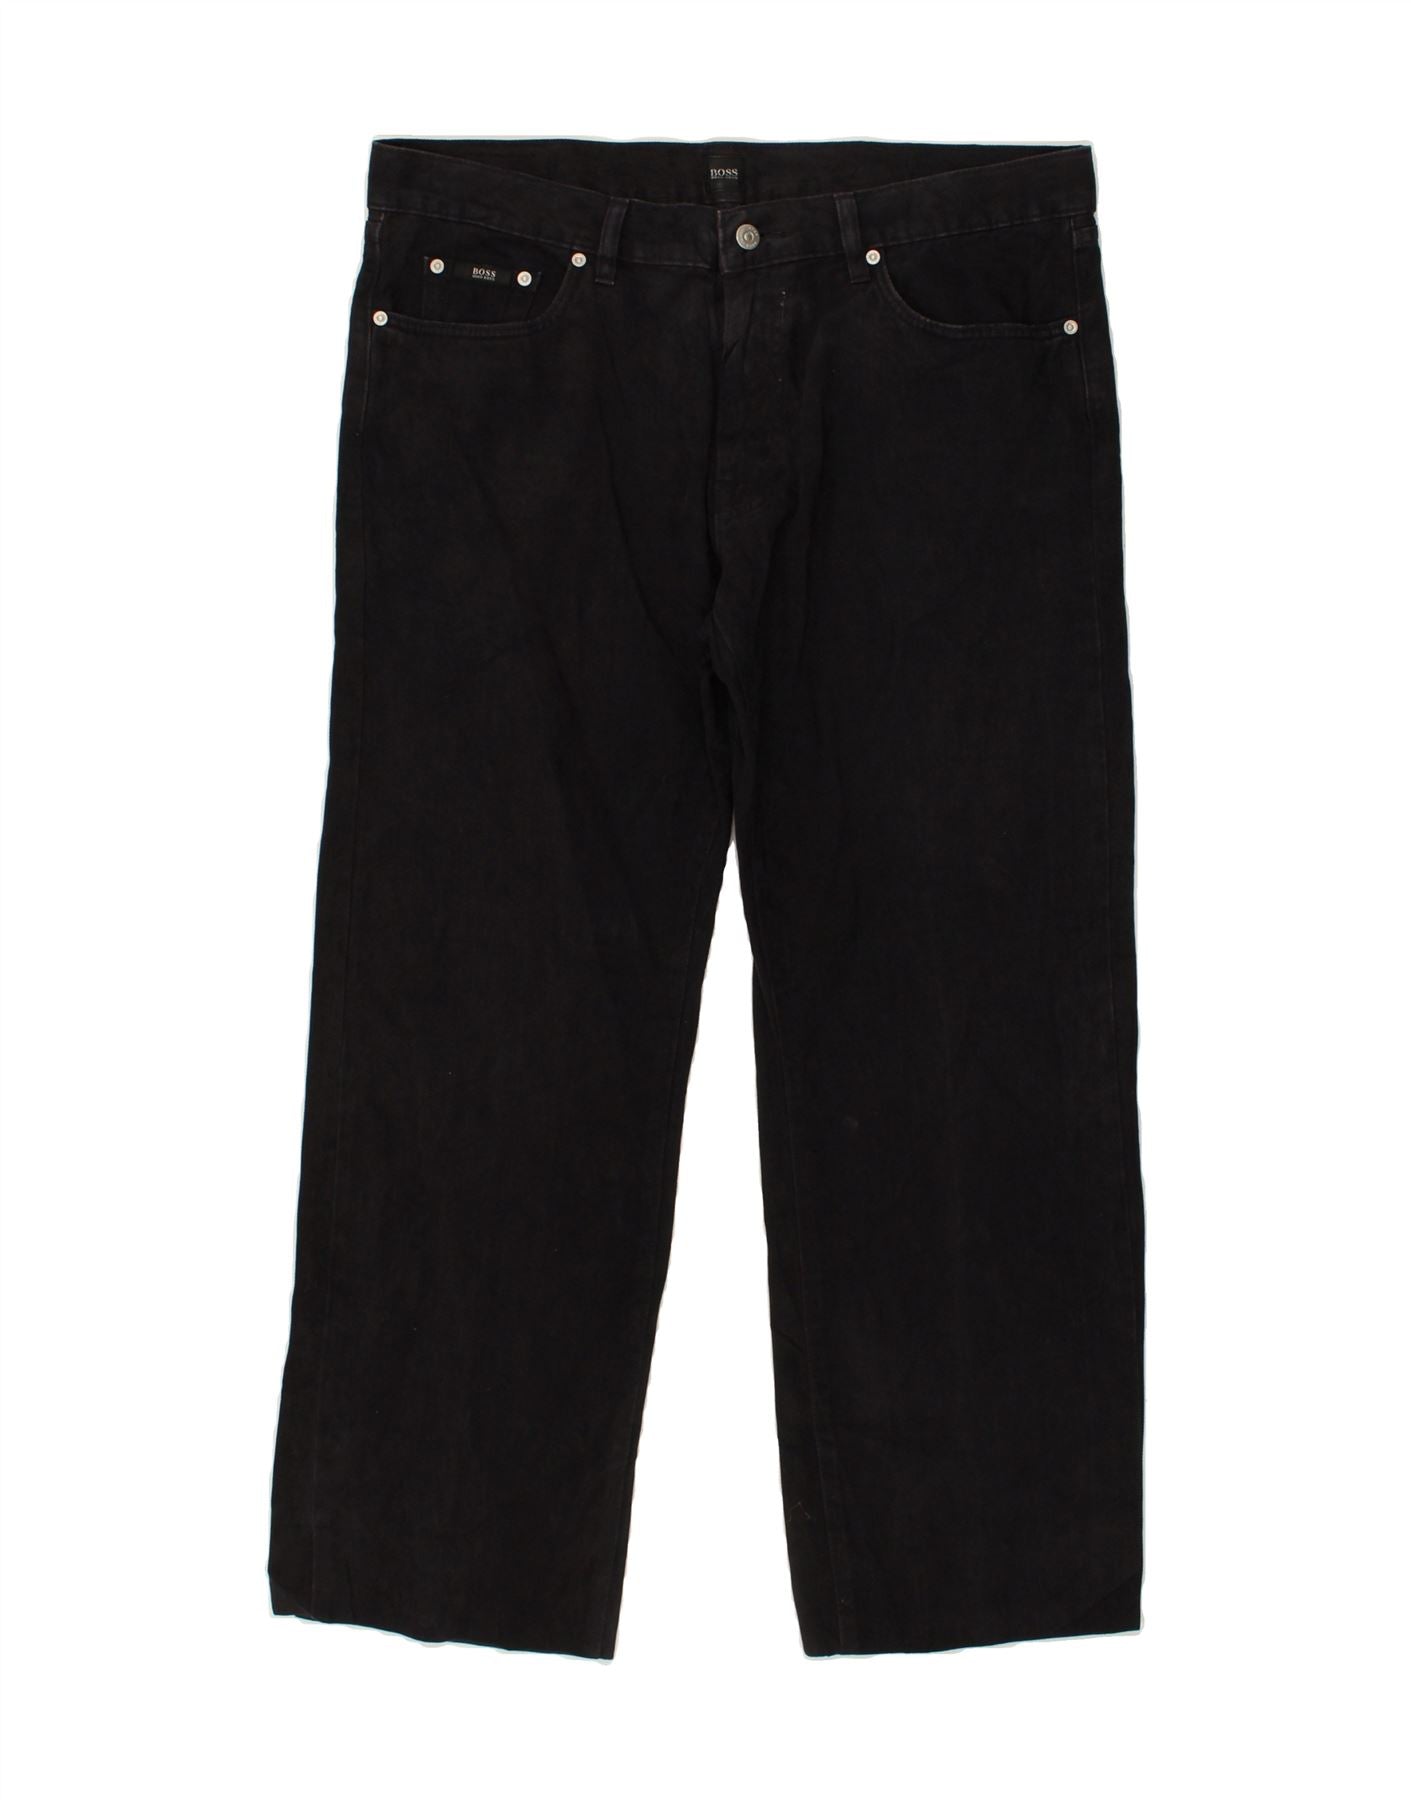 HUGO BOSS Texas rechte jeans heren W38 L29 zwart katoen | Vintage en ...